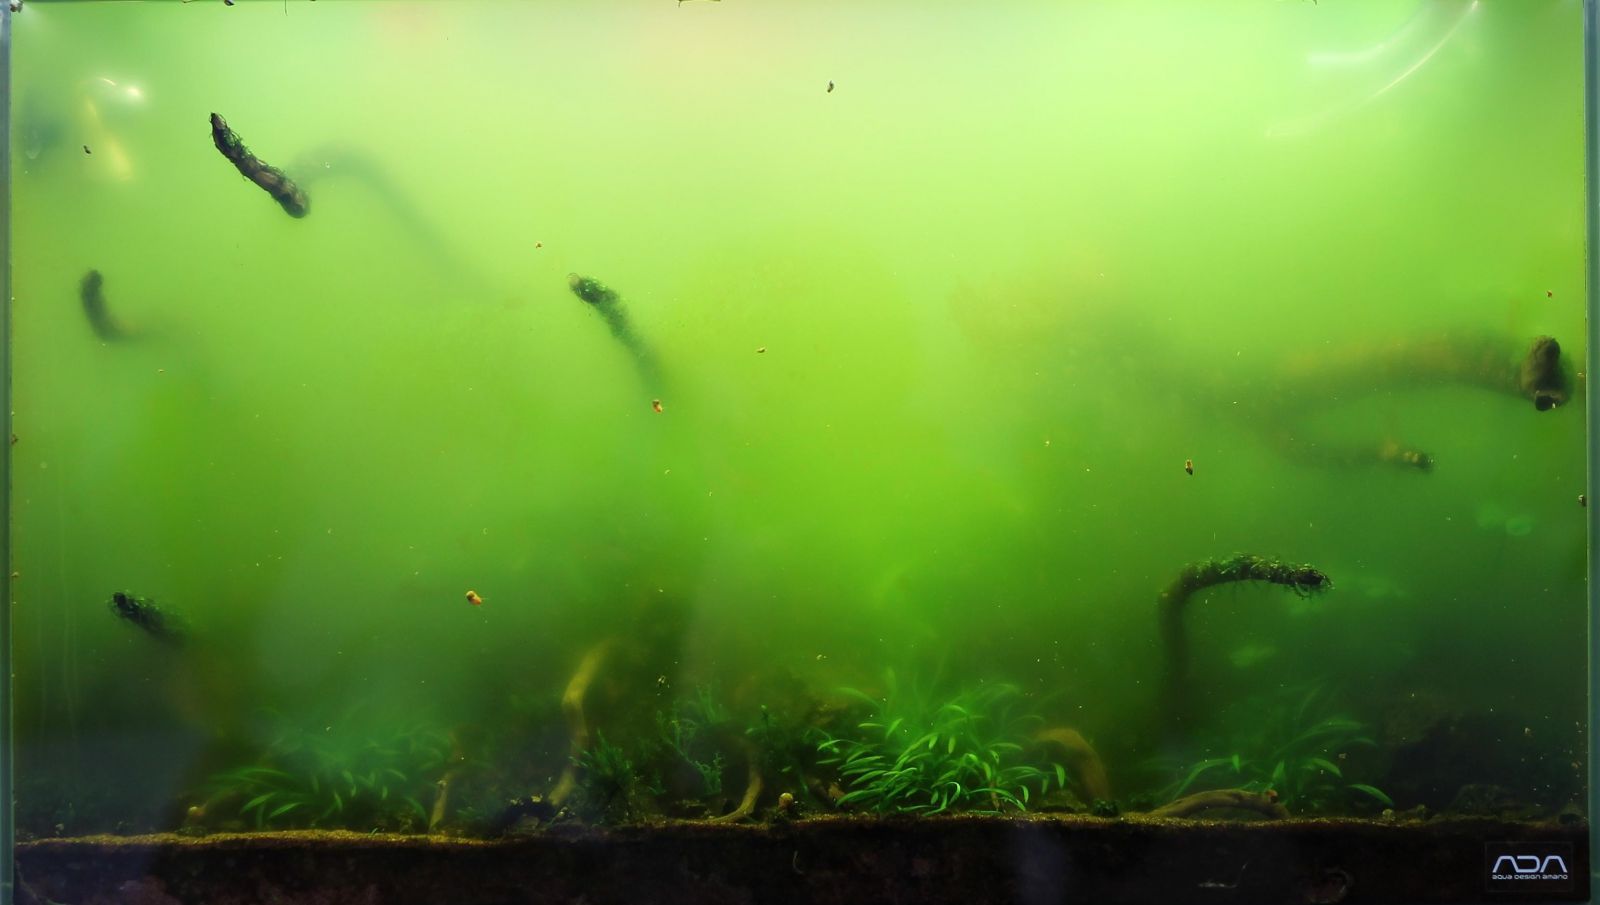 Позеленела вода в аквариуме